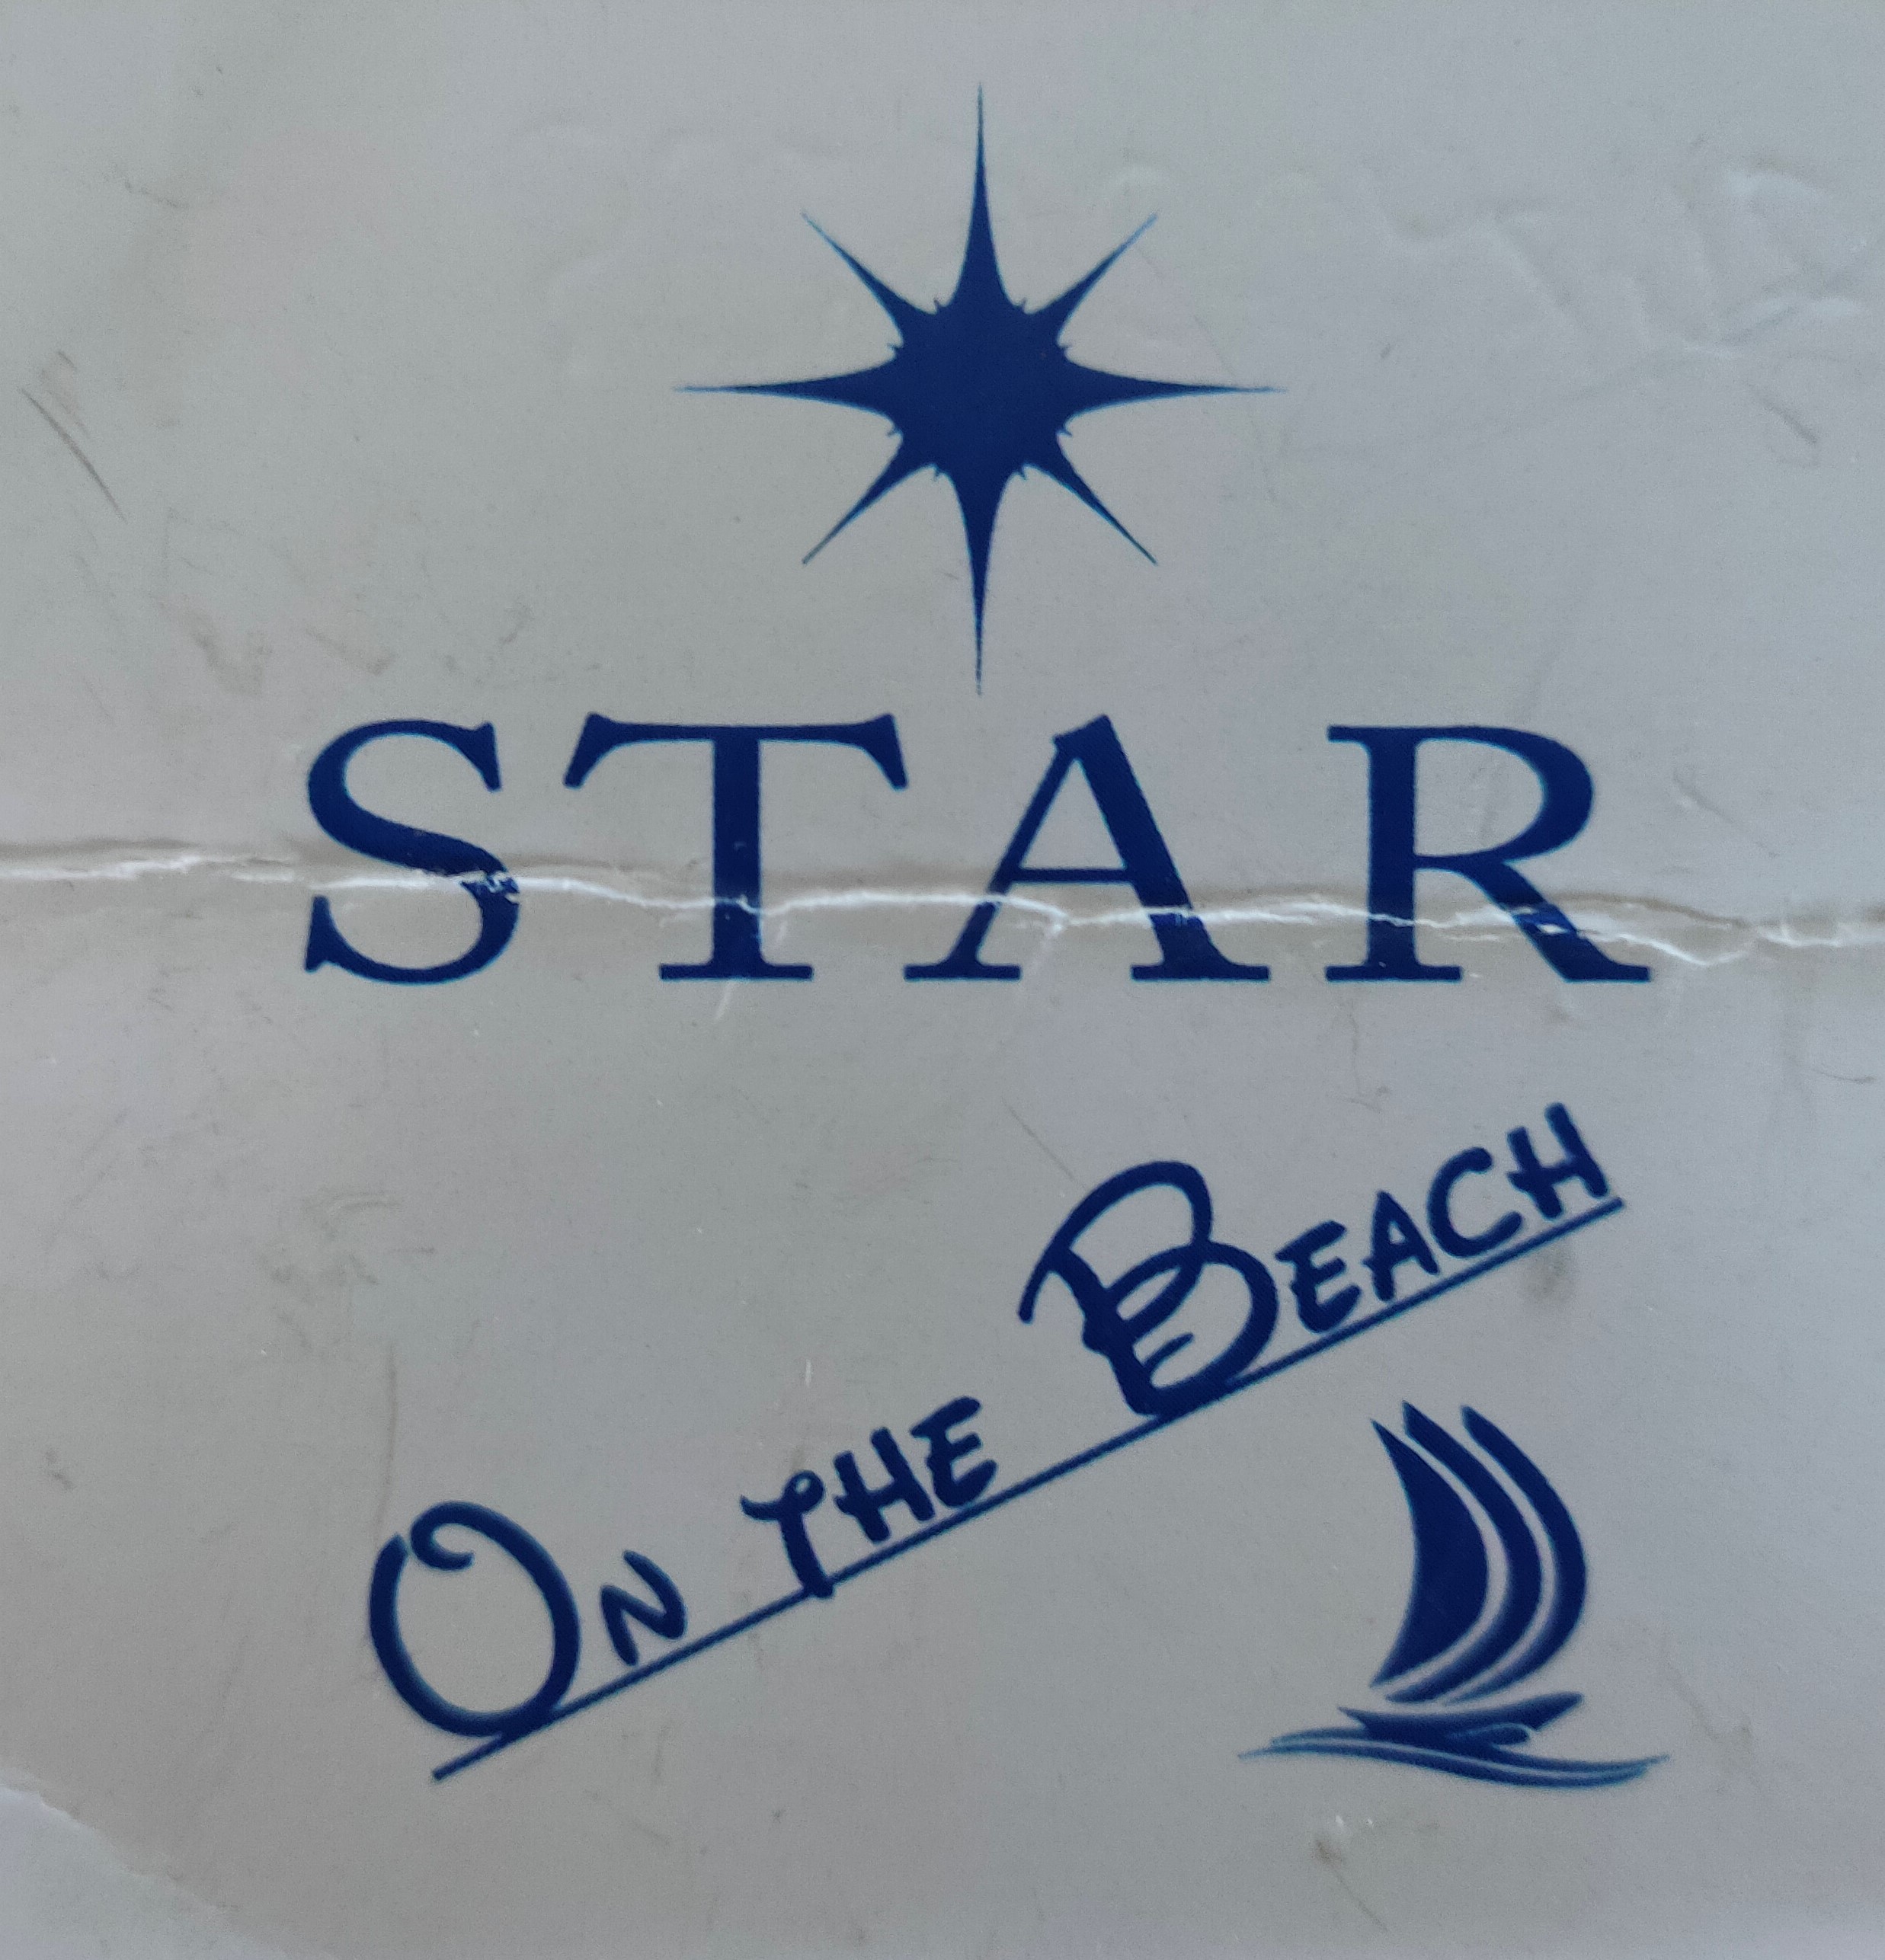 Star on the beach